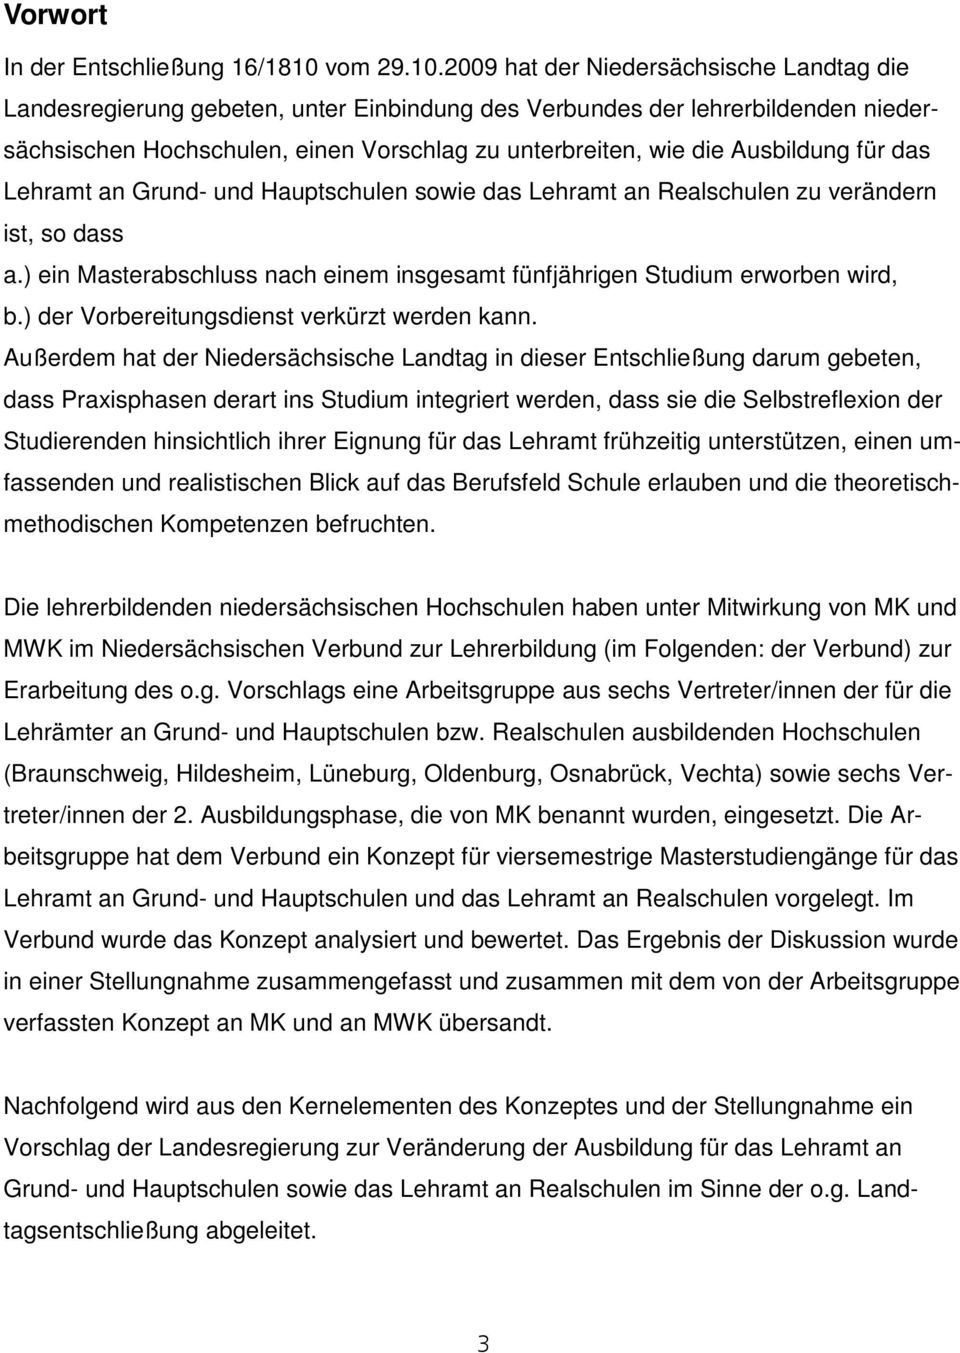 2009 hat der Niedersächsische Landtag die Landesregierung gebeten, unter Einbindung des Verbundes der lehrerbildenden niedersächsischen Hochschulen, einen Vorschlag zu unterbreiten, wie die